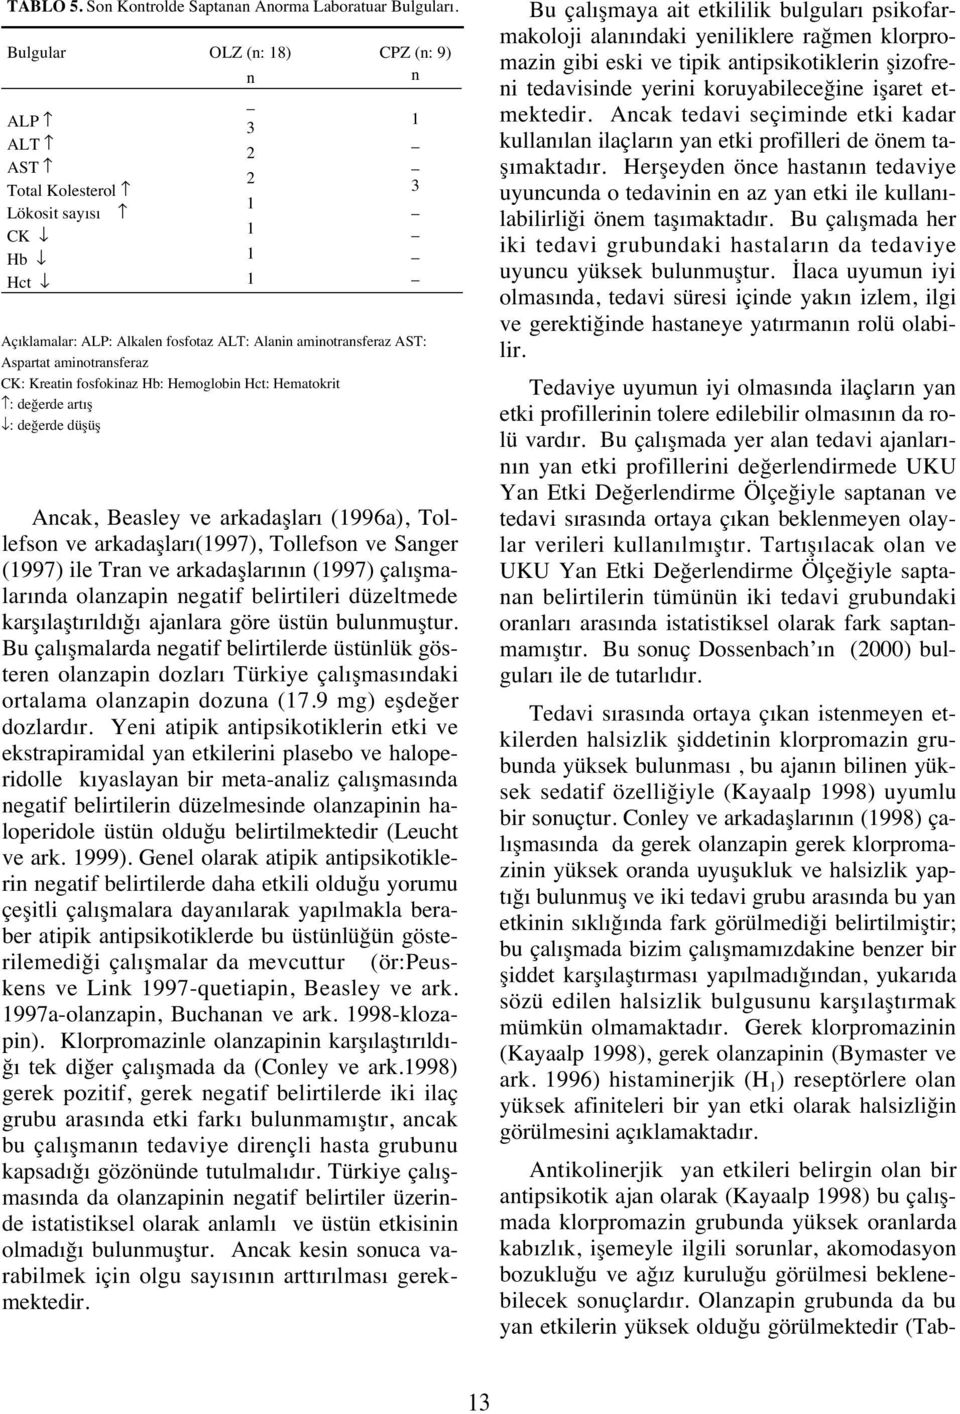 Kreatin fosfokinaz Hb: Hemoglobin Hct: Hematokrit : değerde art ş : değerde düşüş Ancak, Beasley ve arkadaşlar (1996a), Tollefson ve arkadaşlar (1997), Tollefson ve Sanger (1997) ile Tran ve